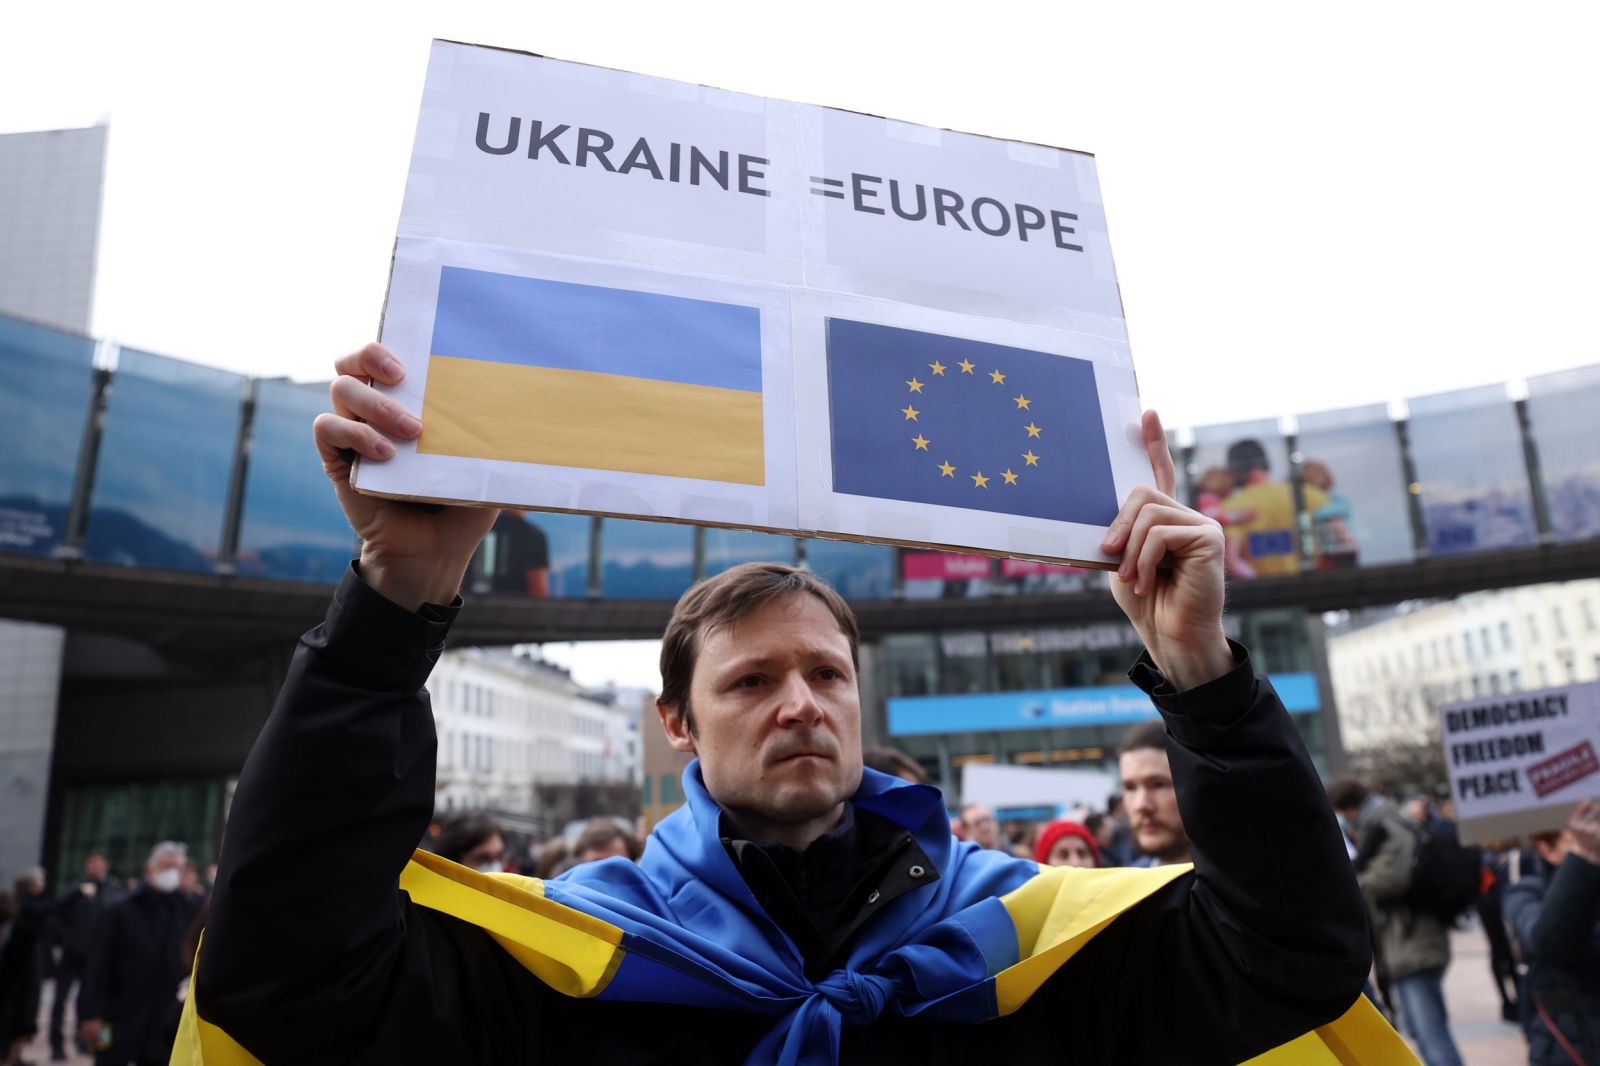 Người biểu tình ủng hộ Ukraine trước trụ sở của Liên minh châu Âu ở Brussels, Bỉ, vào ngày 1/3/2022. Ảnh: AFP